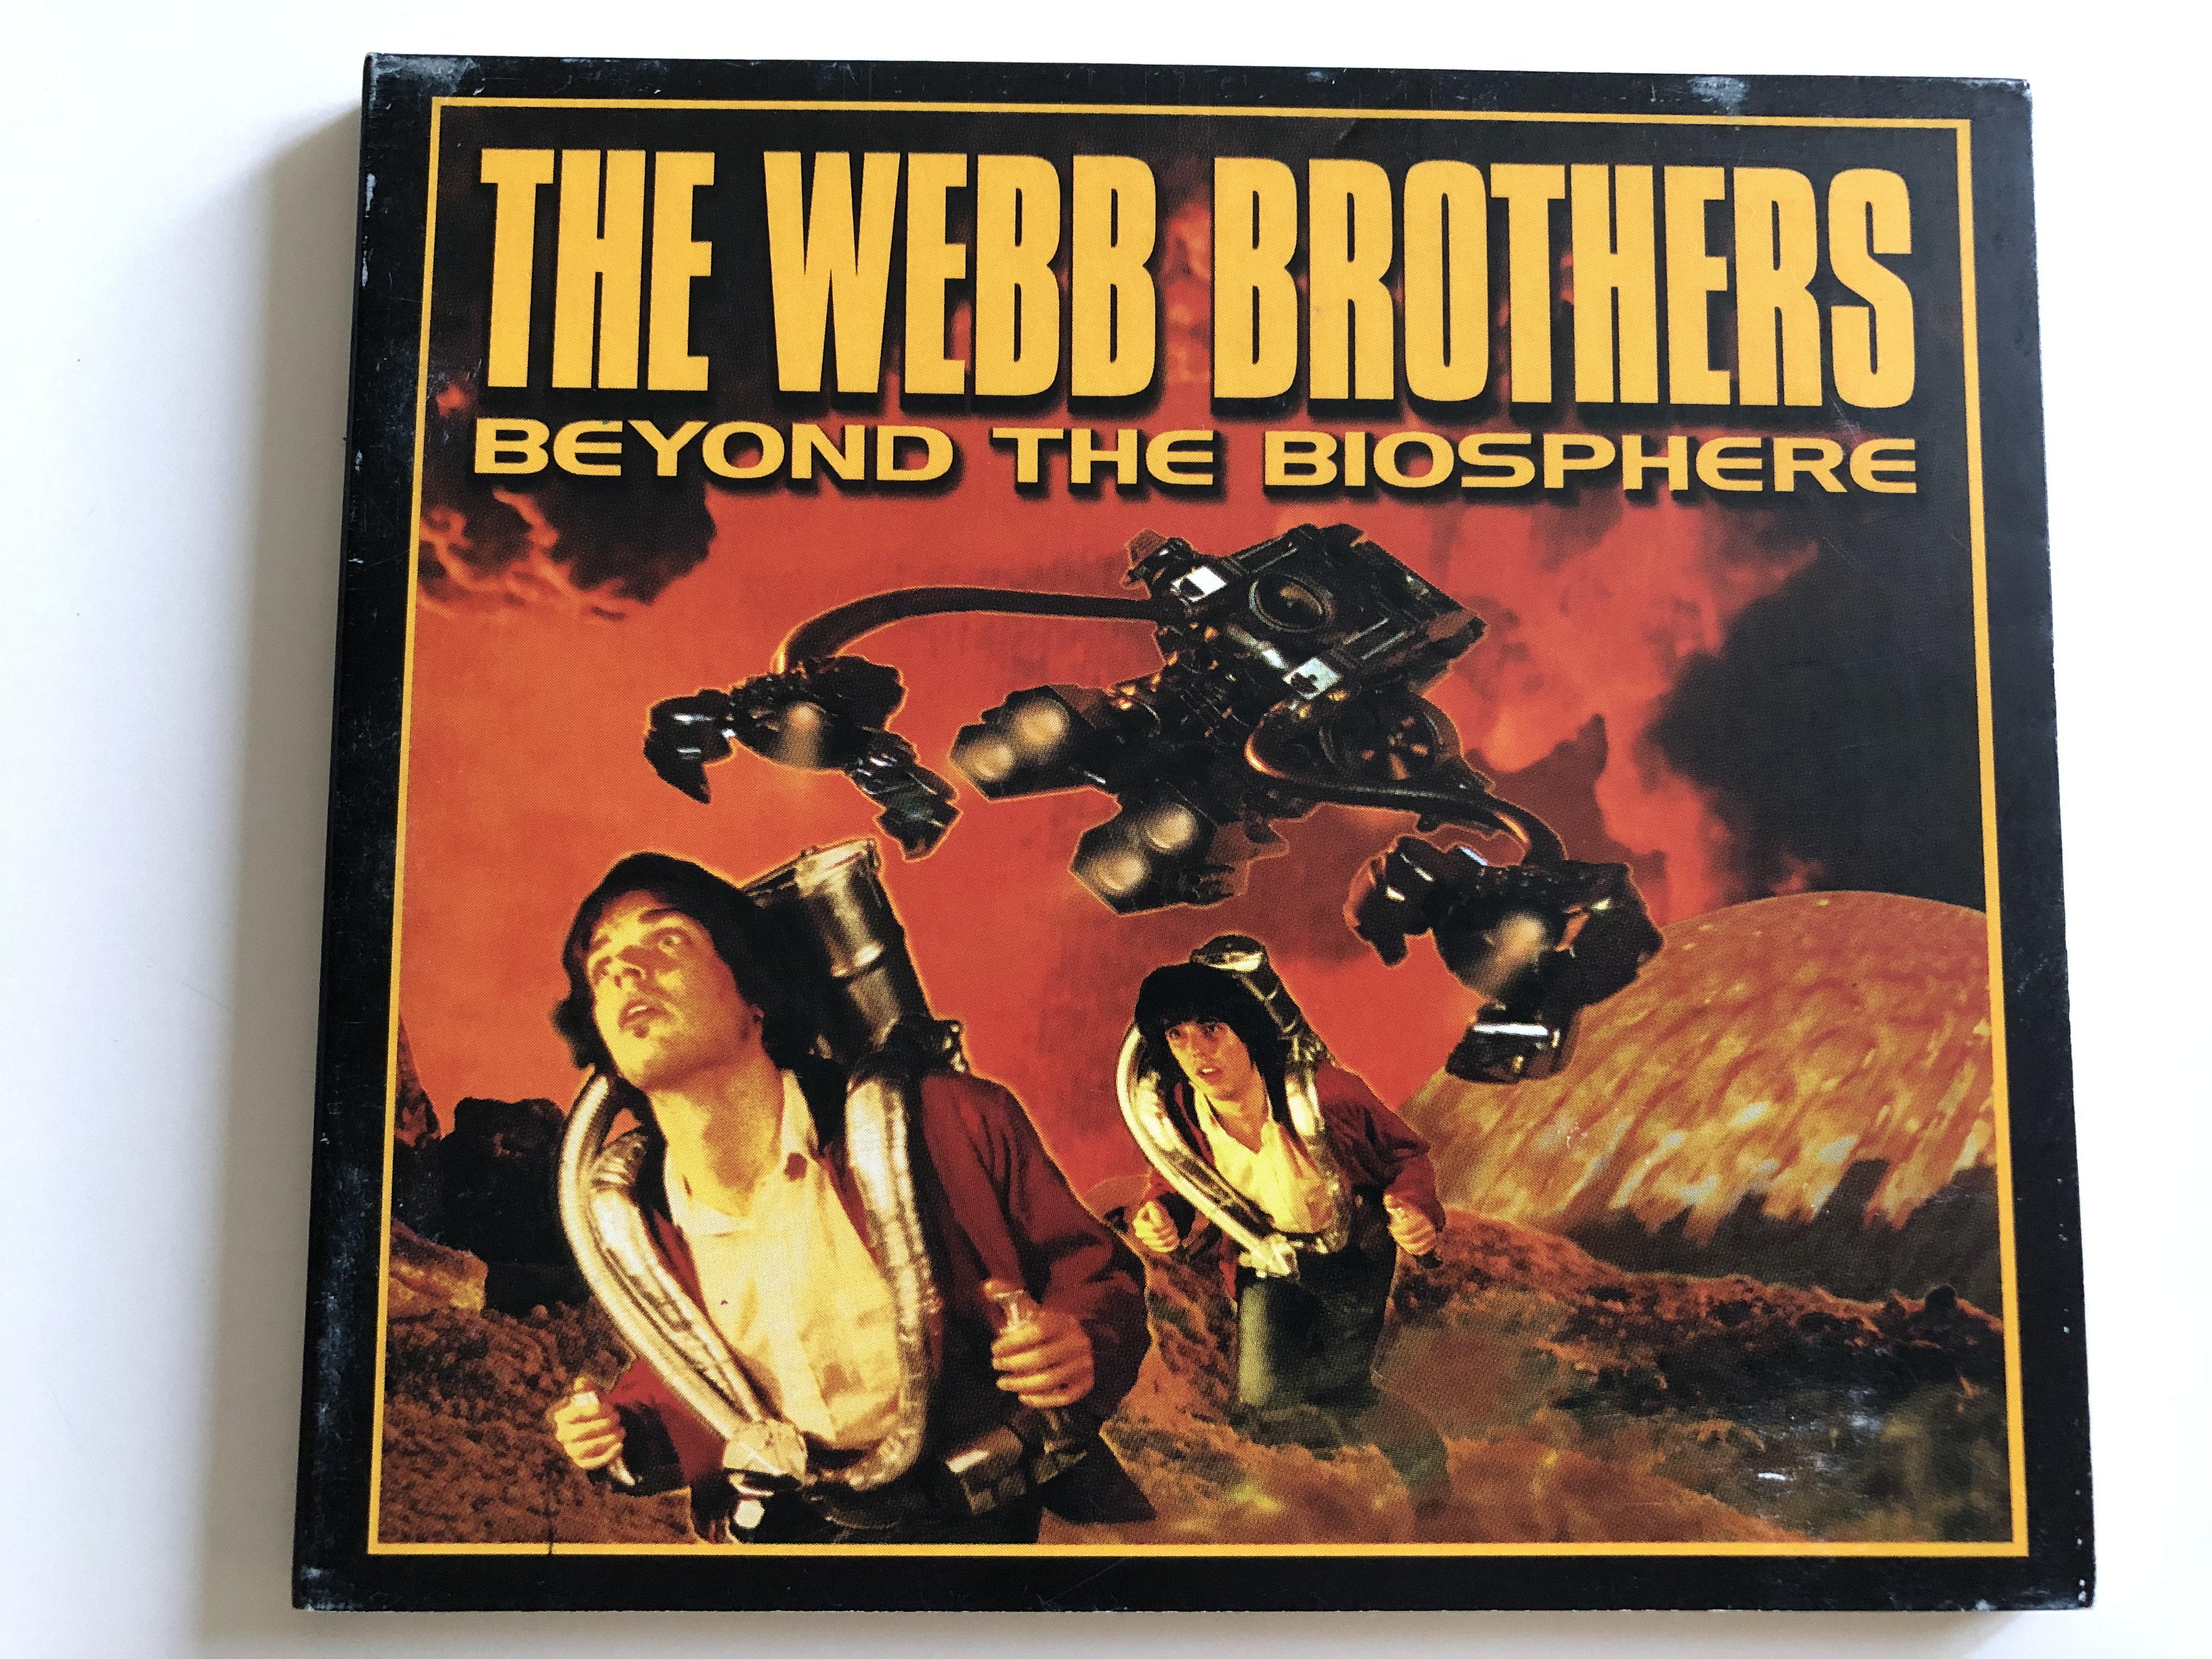 the-webb-brothers-beyond-the-biosphere-audio-cd-1998-mews-5-3984-28323-9-1-.jpg